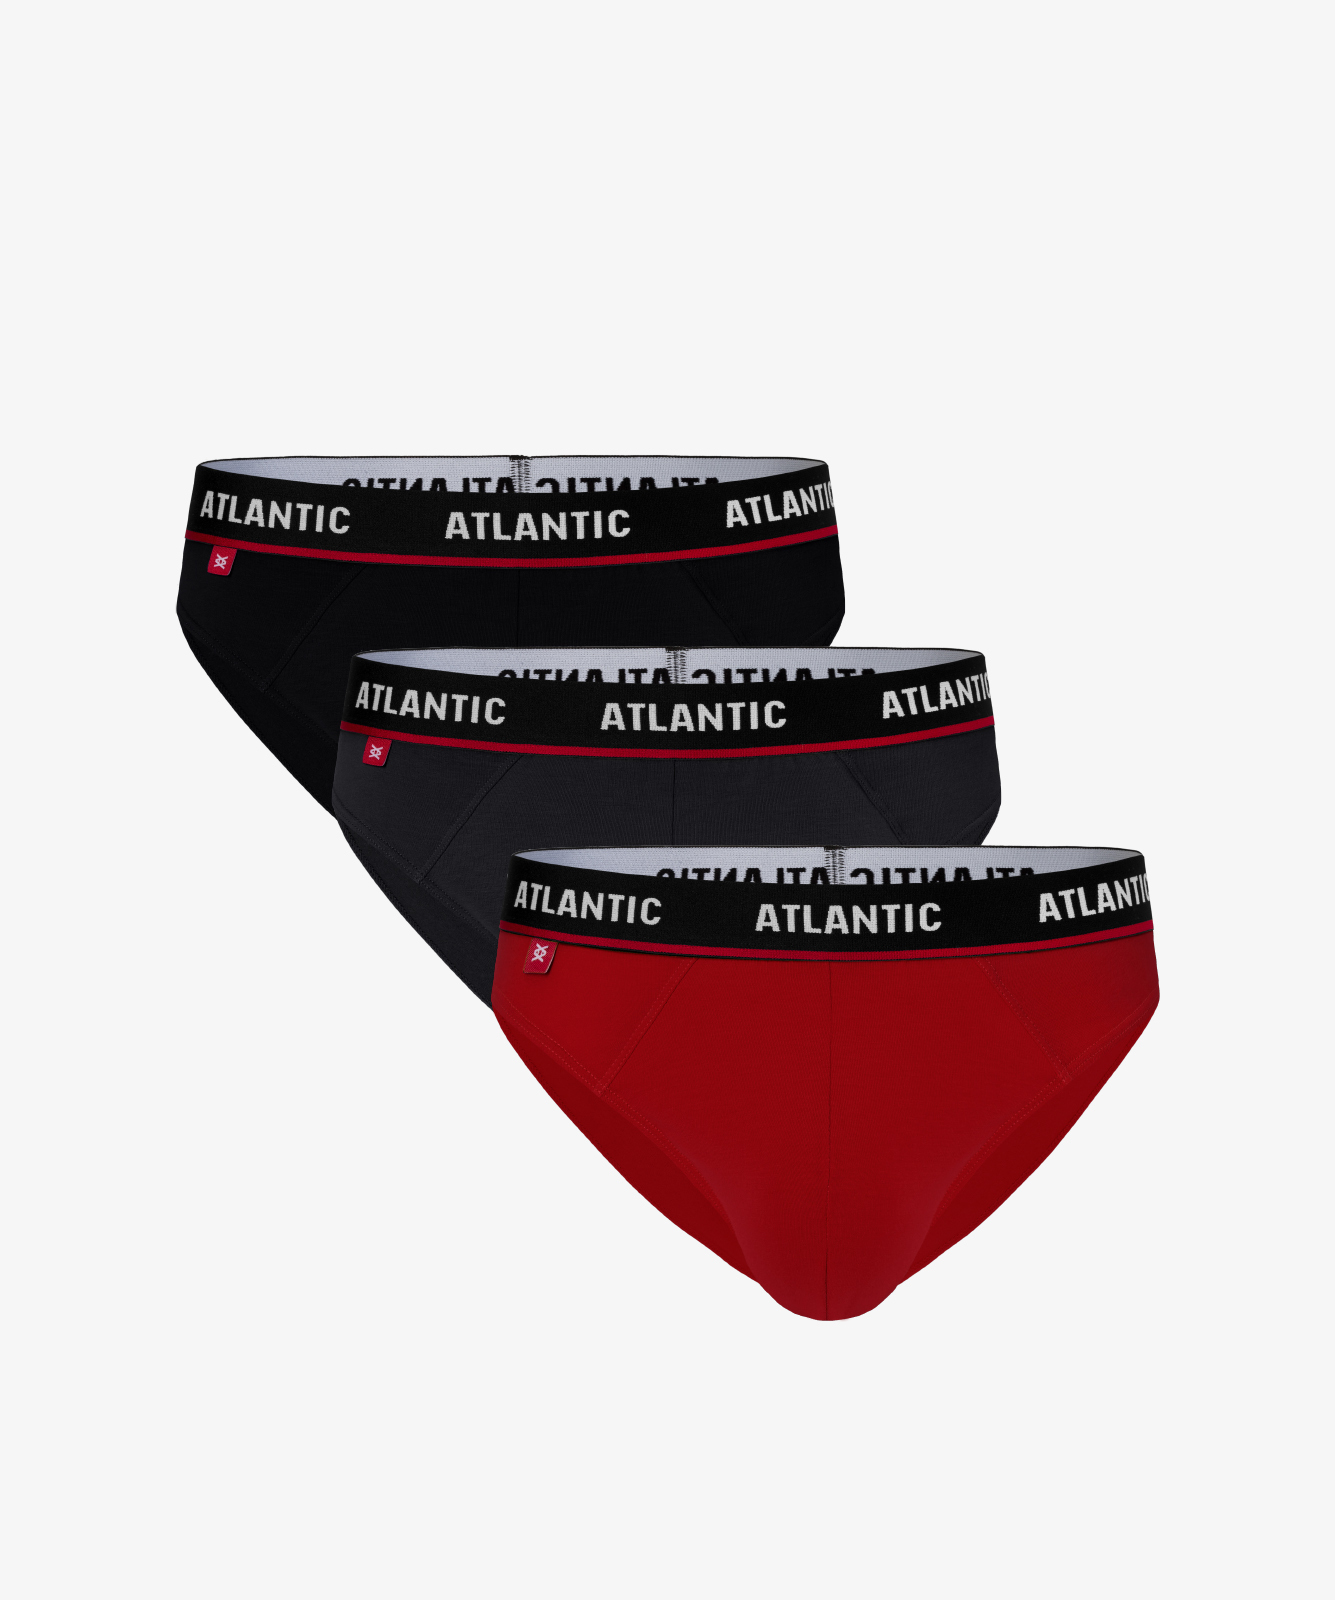 Мужские трусы слипы спорт Atlantic, набор 3 шт., хлопок, черные + графит + красные, 3MP-123